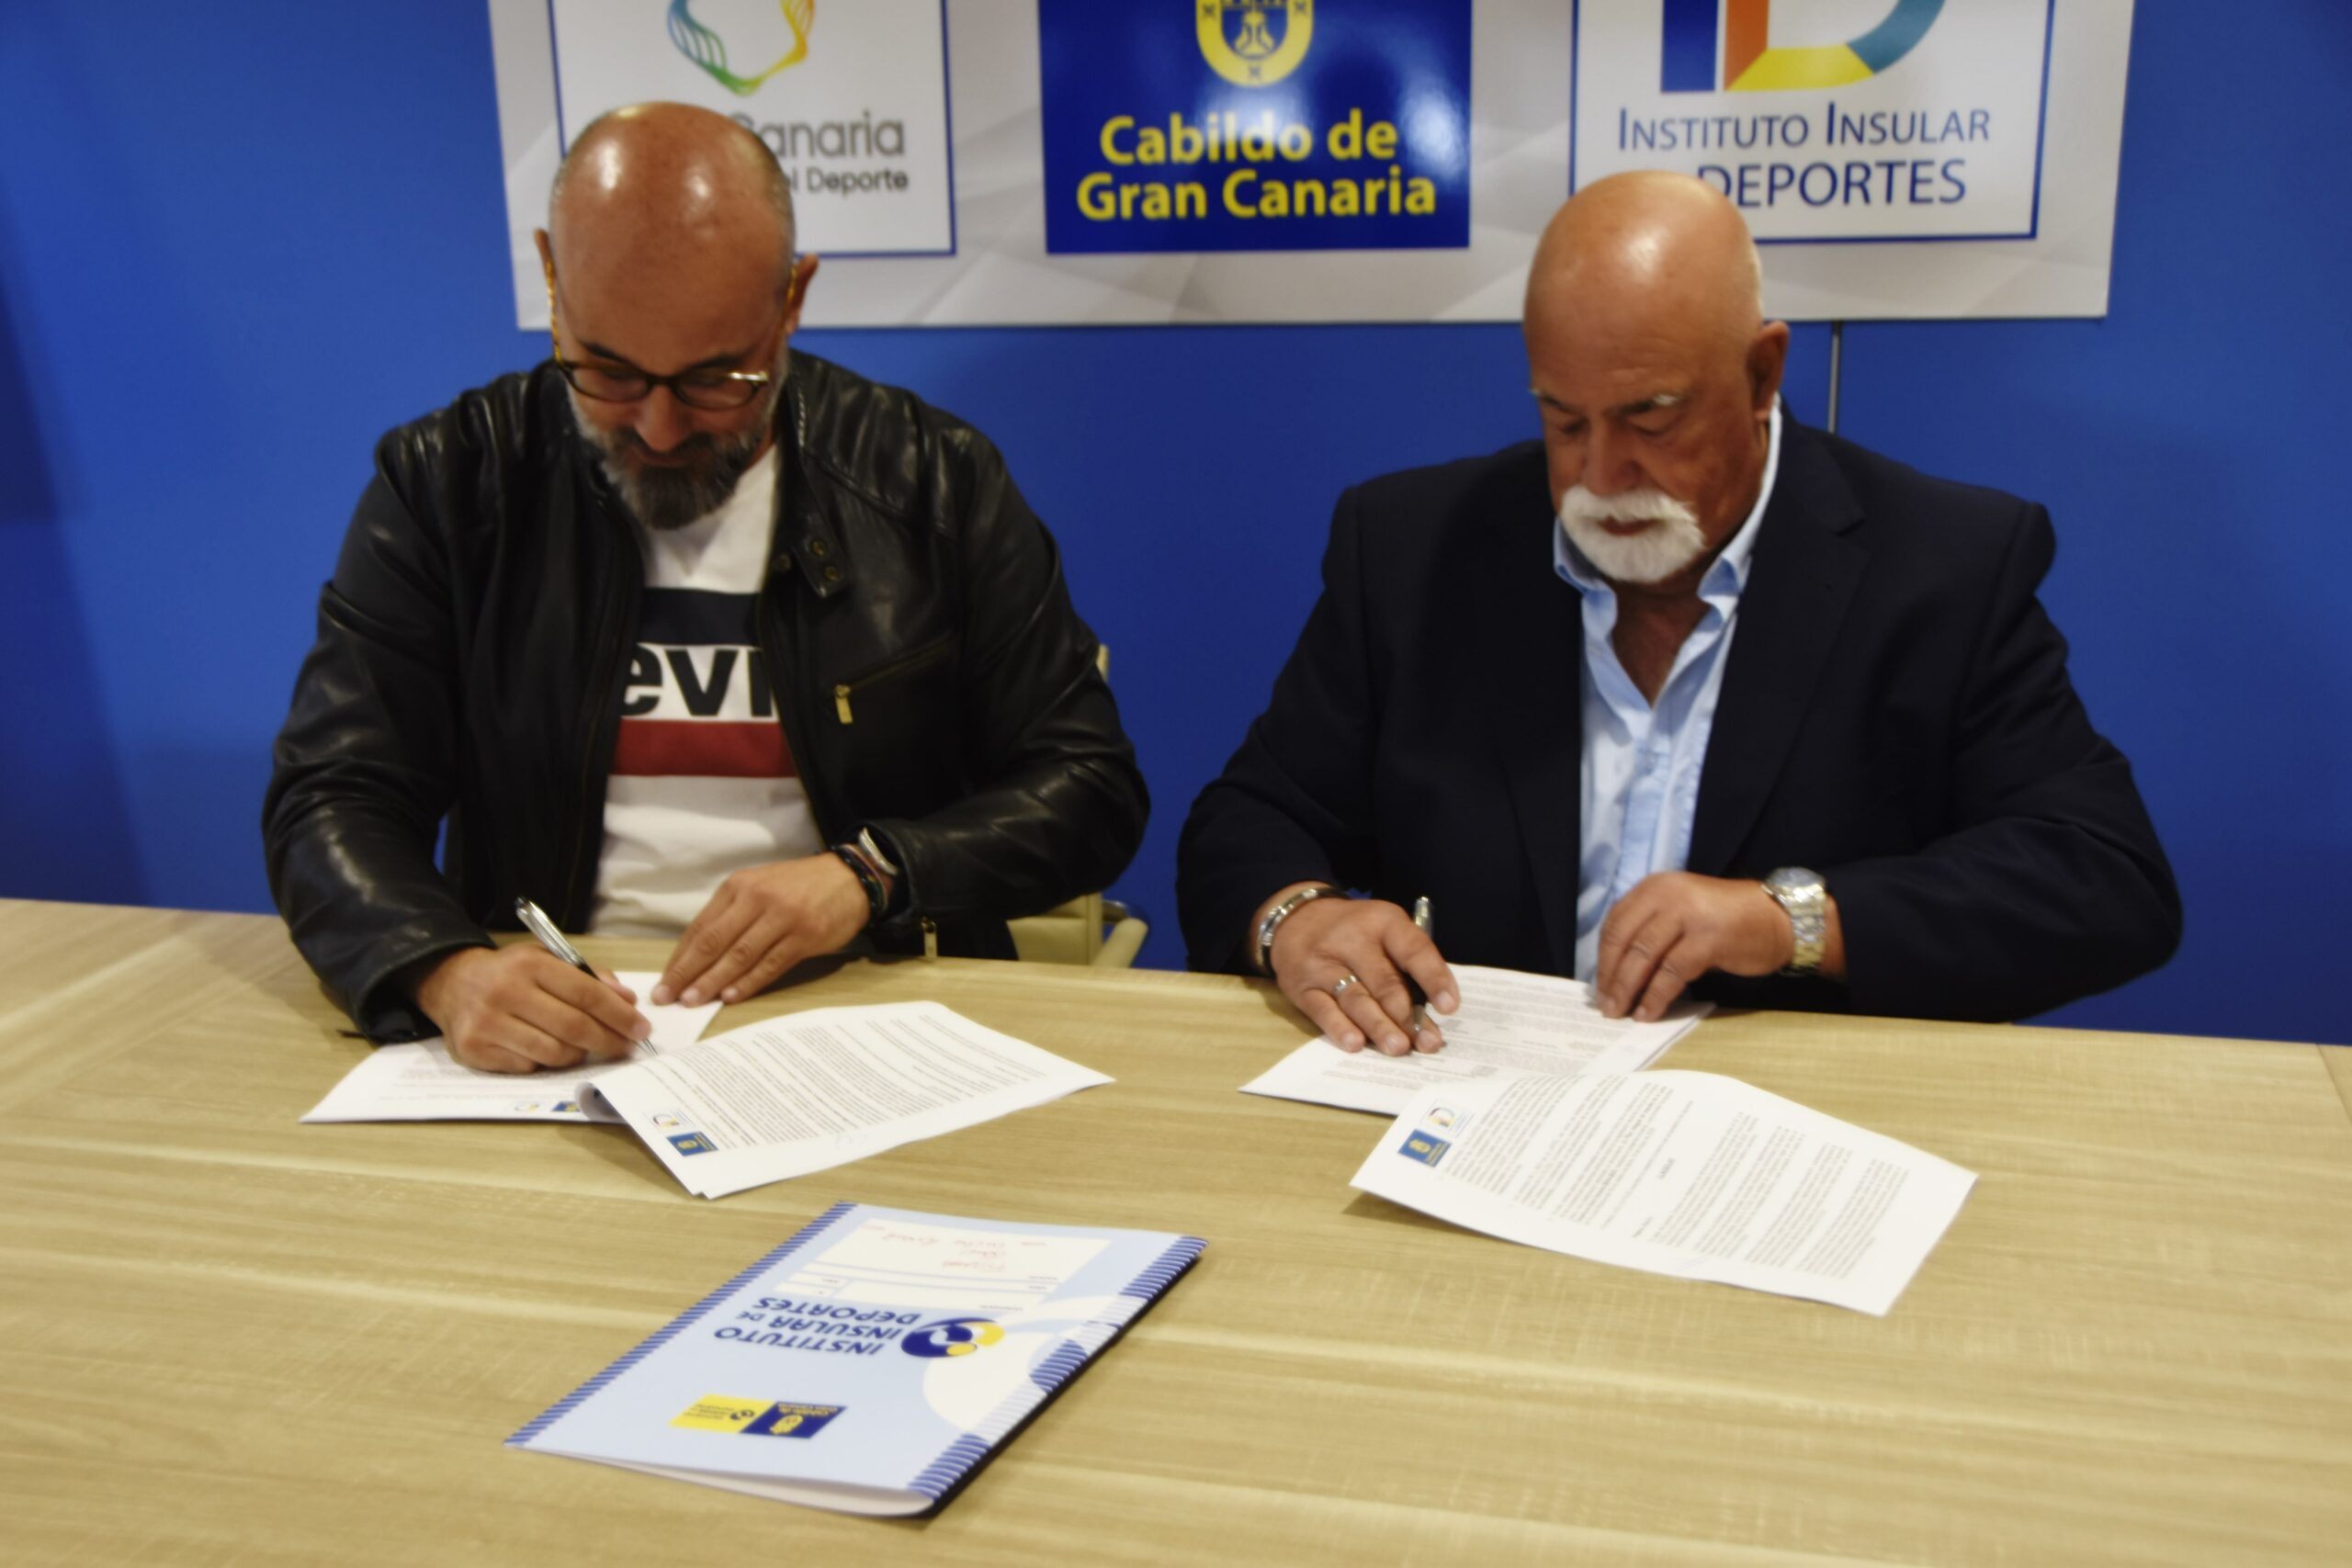 El Instituto Insular de Deportes continua impulsando la Lucha Canaria de Gran Canaria